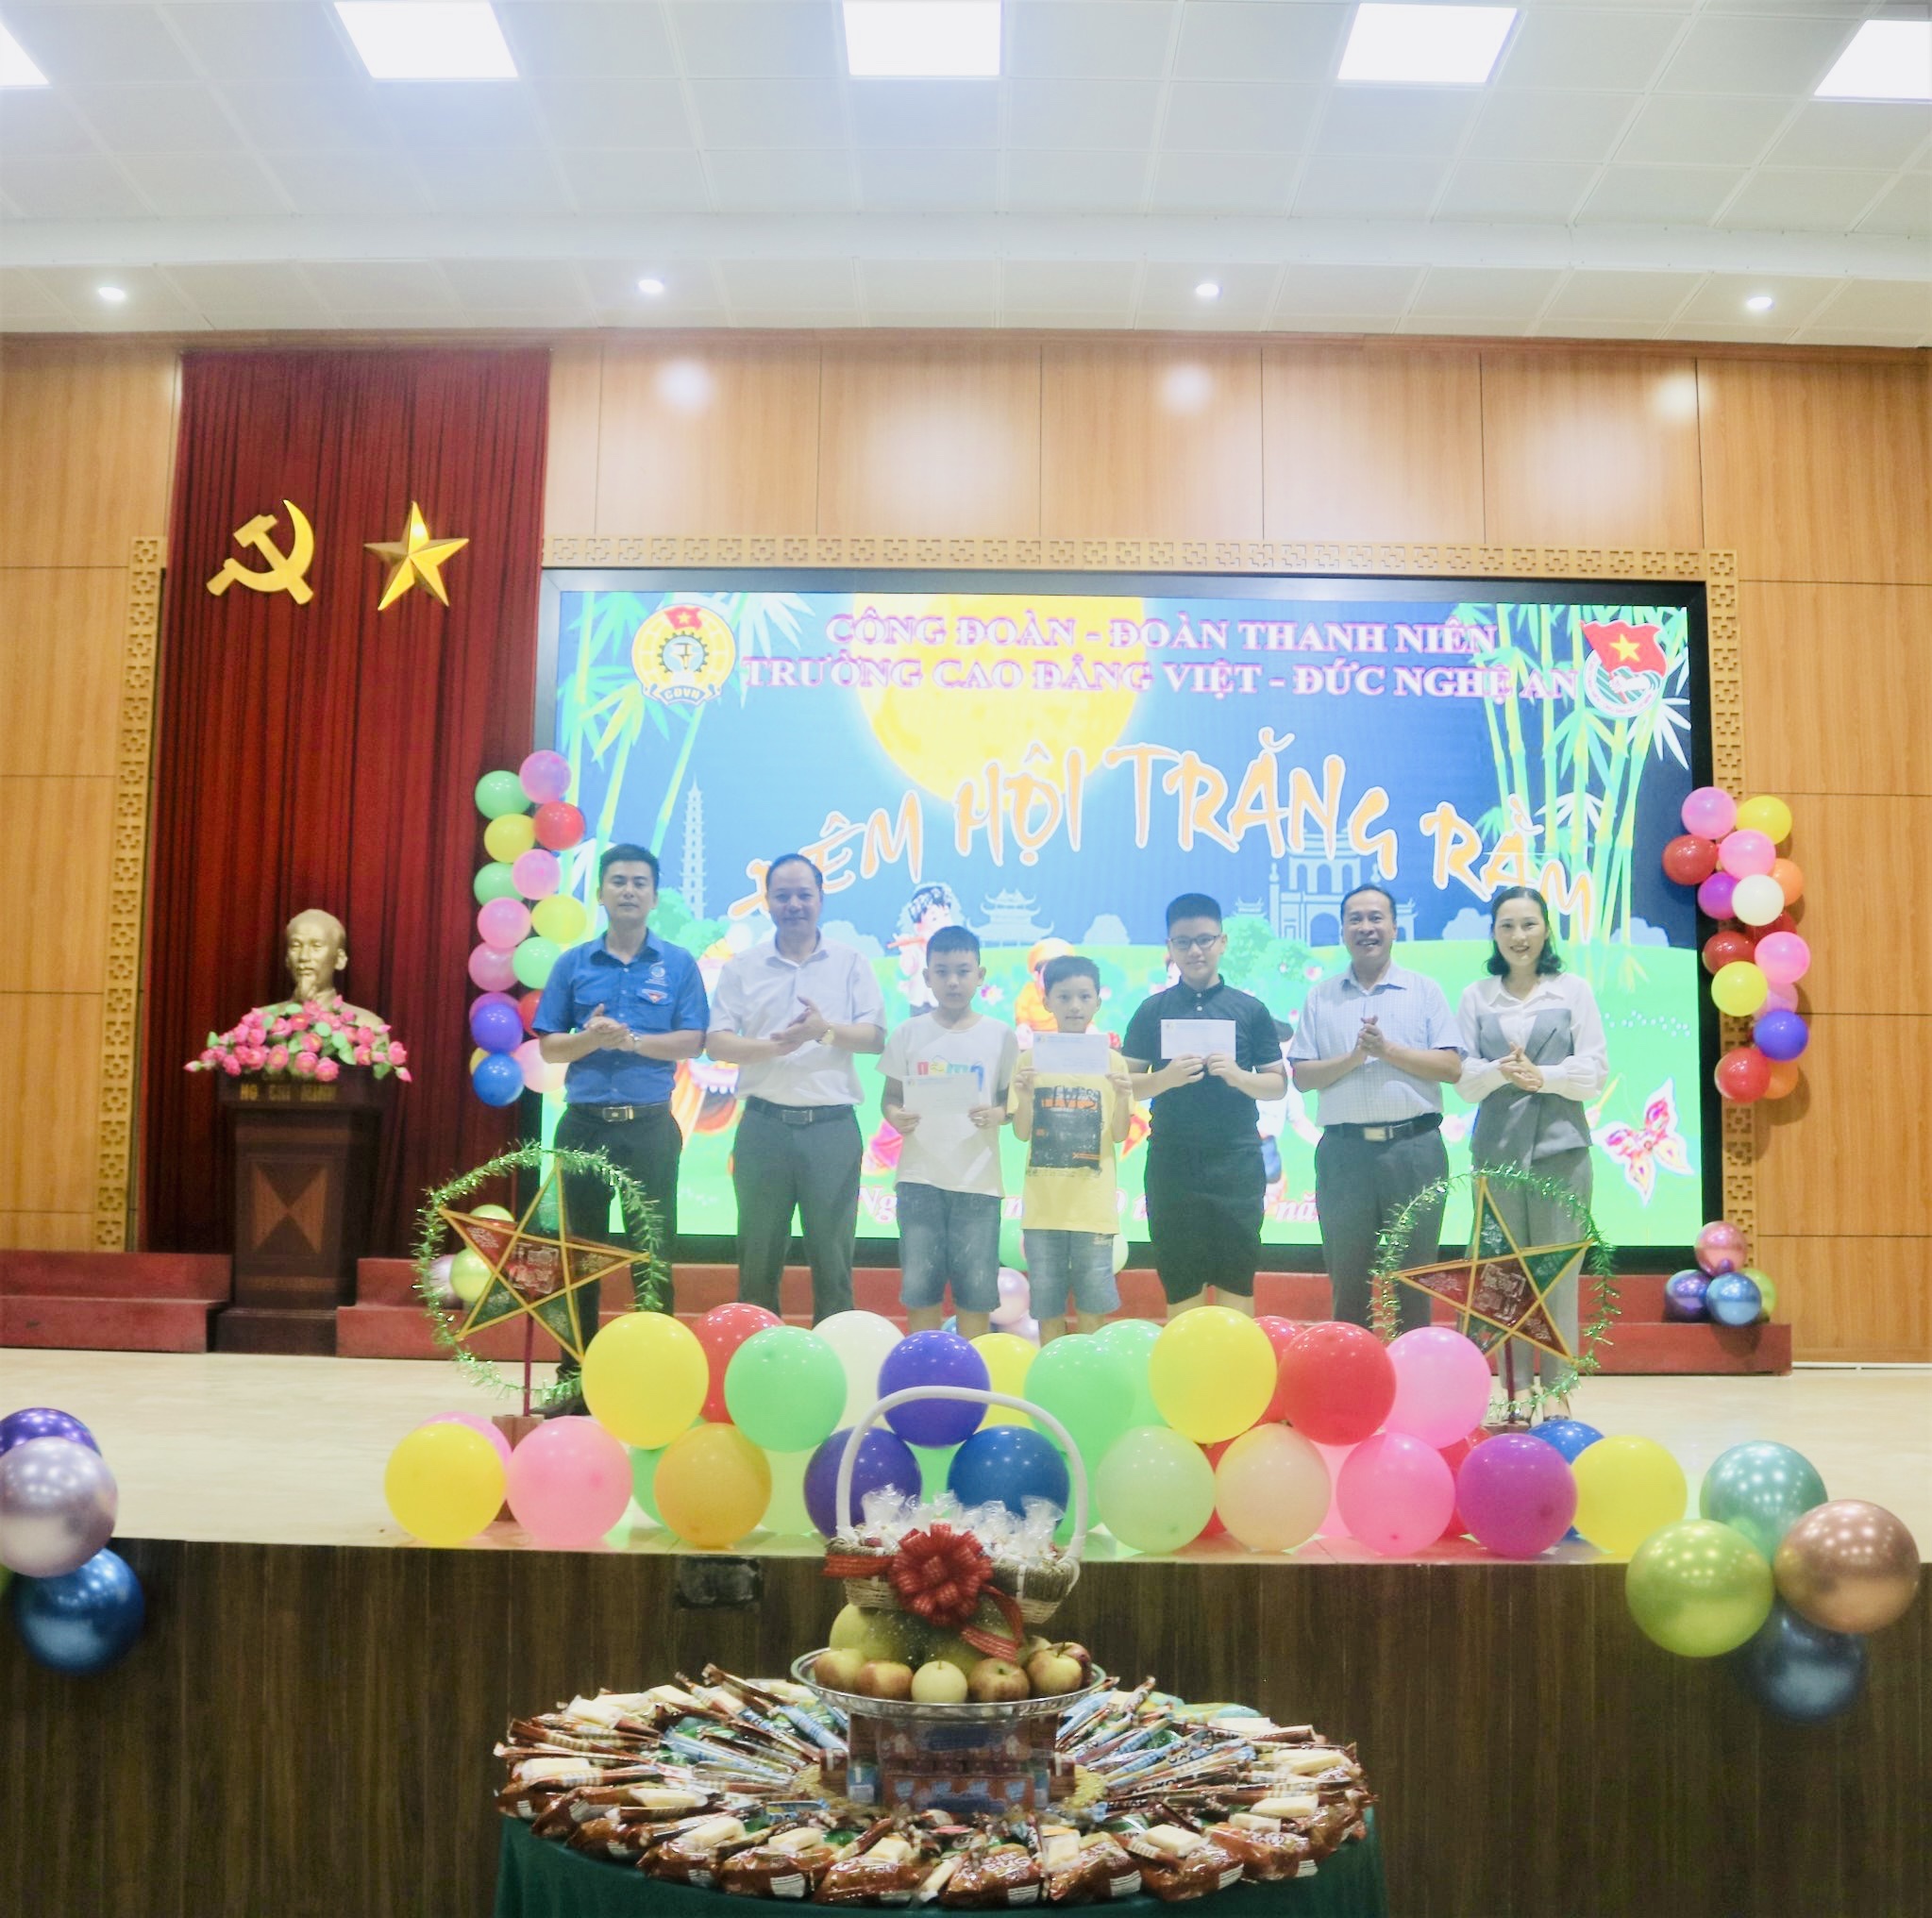 Công đoàn trường với Chương trình “Đêm hội Trăng rằm” dành cho các cháu là con em của cán bộ, viên chức Trường Cao đẳng Việt – Đức Nghệ An